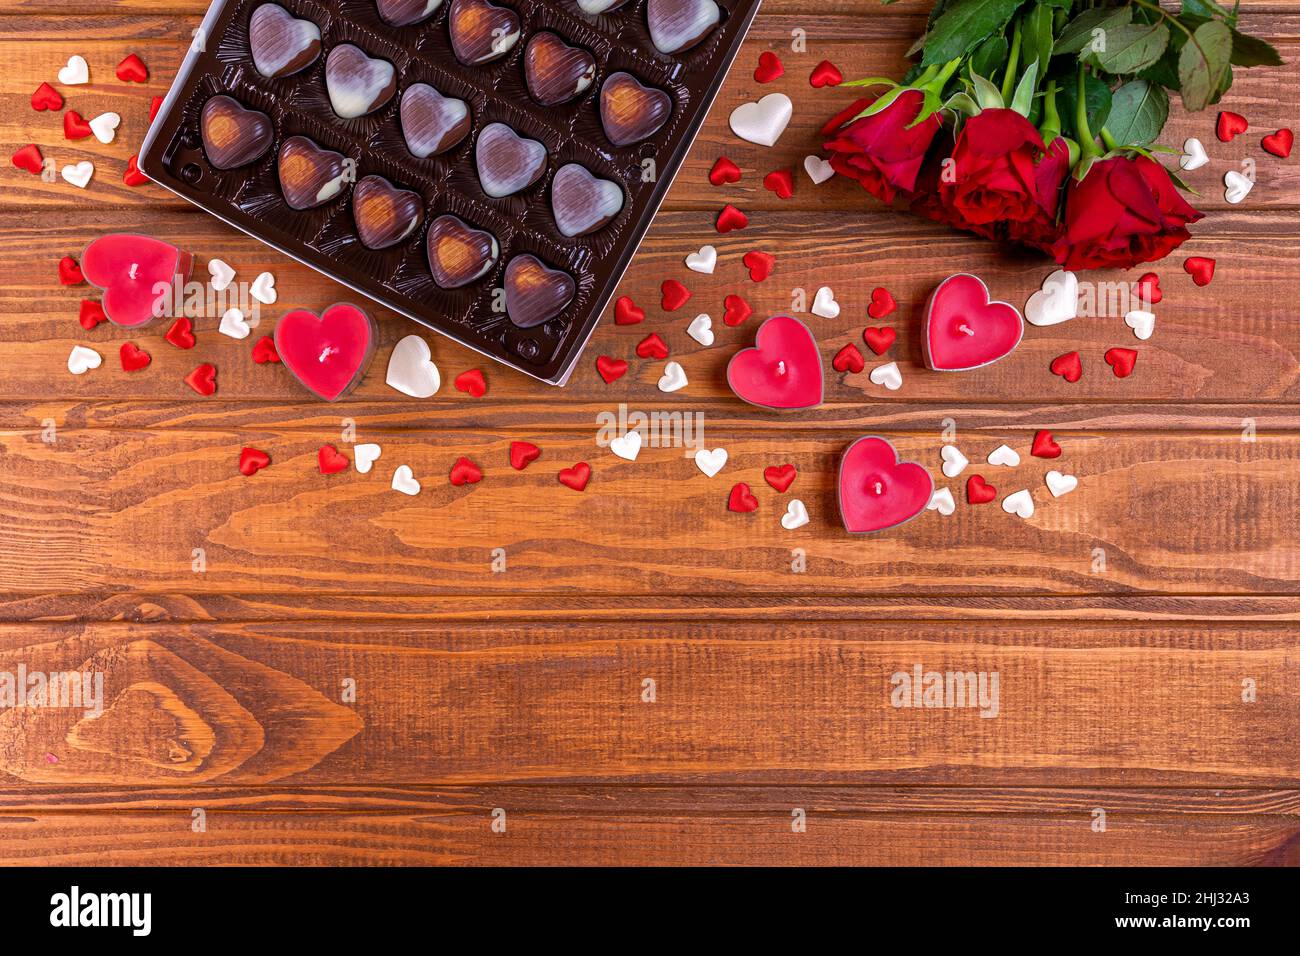 Día de San Valentín de chocolate dulces en forma de corazón y rosas rojas con velas en madera. Concepto de amor y romance. Foto de stock